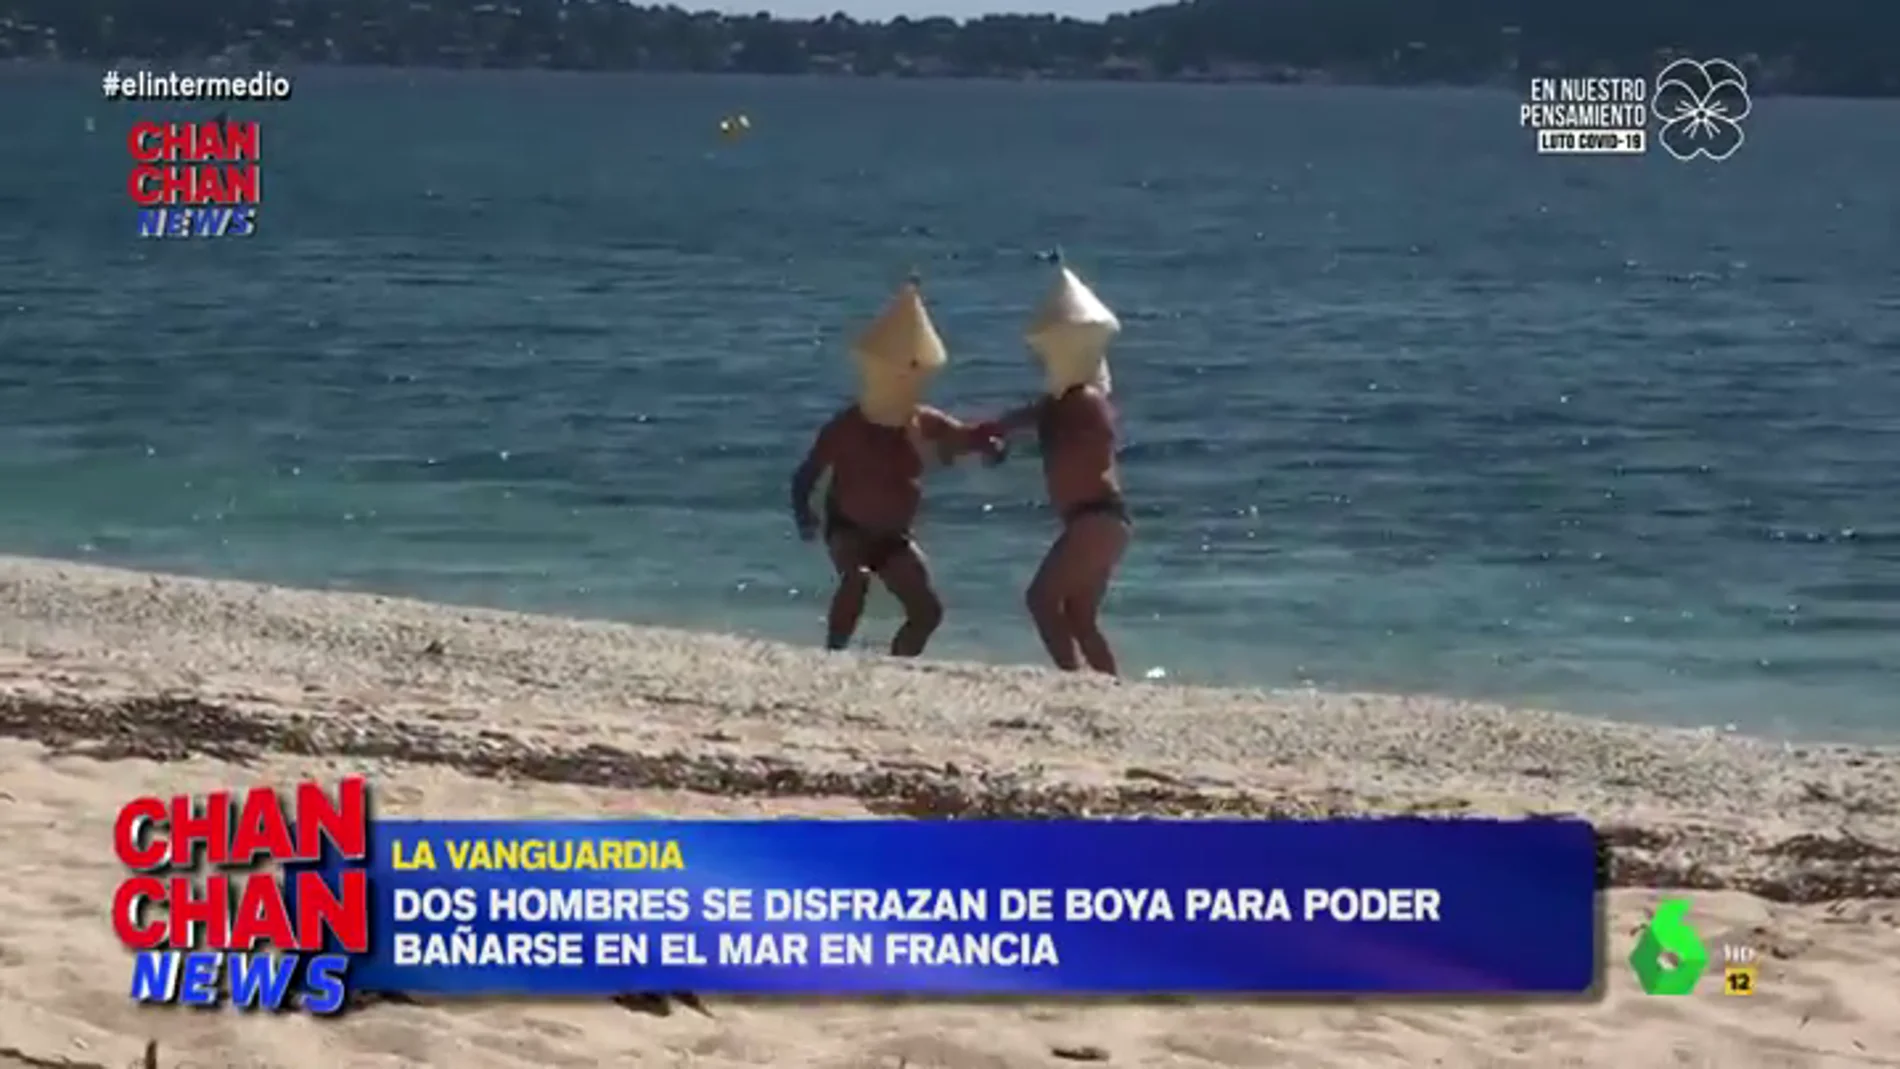 El surrealista vídeo en el que dos franceses se bañan en el mar disfrazados de boya para evitar ser multados